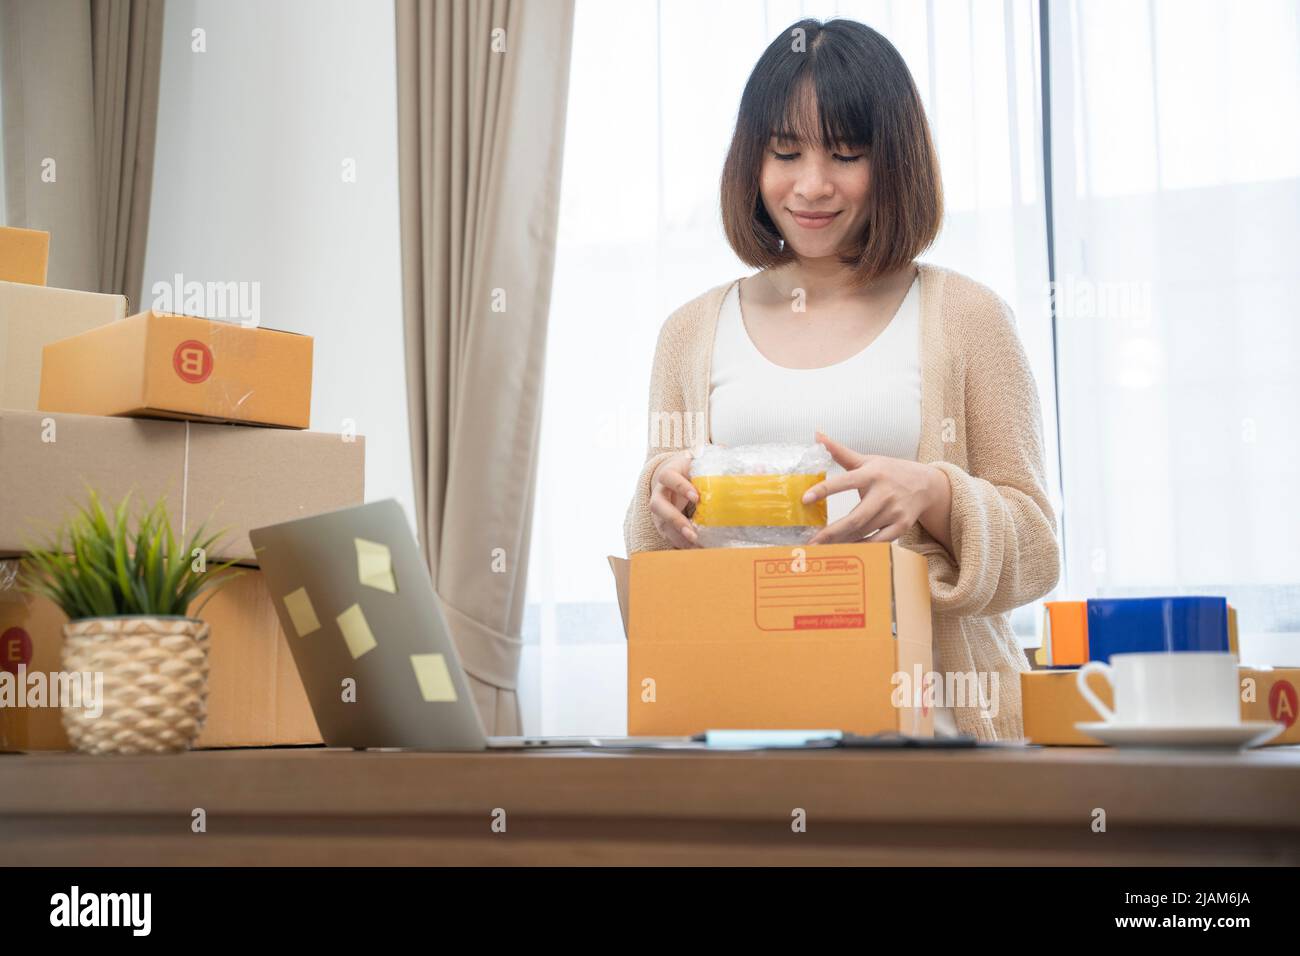 Asiatische Frau, die in Boxen verpackt, um zu Hause zu arbeiten Small Business Owner oder Startup Small Business Entrepreneurs, die an Online-Marketing-Versandkartons arbeiten. Stockfoto